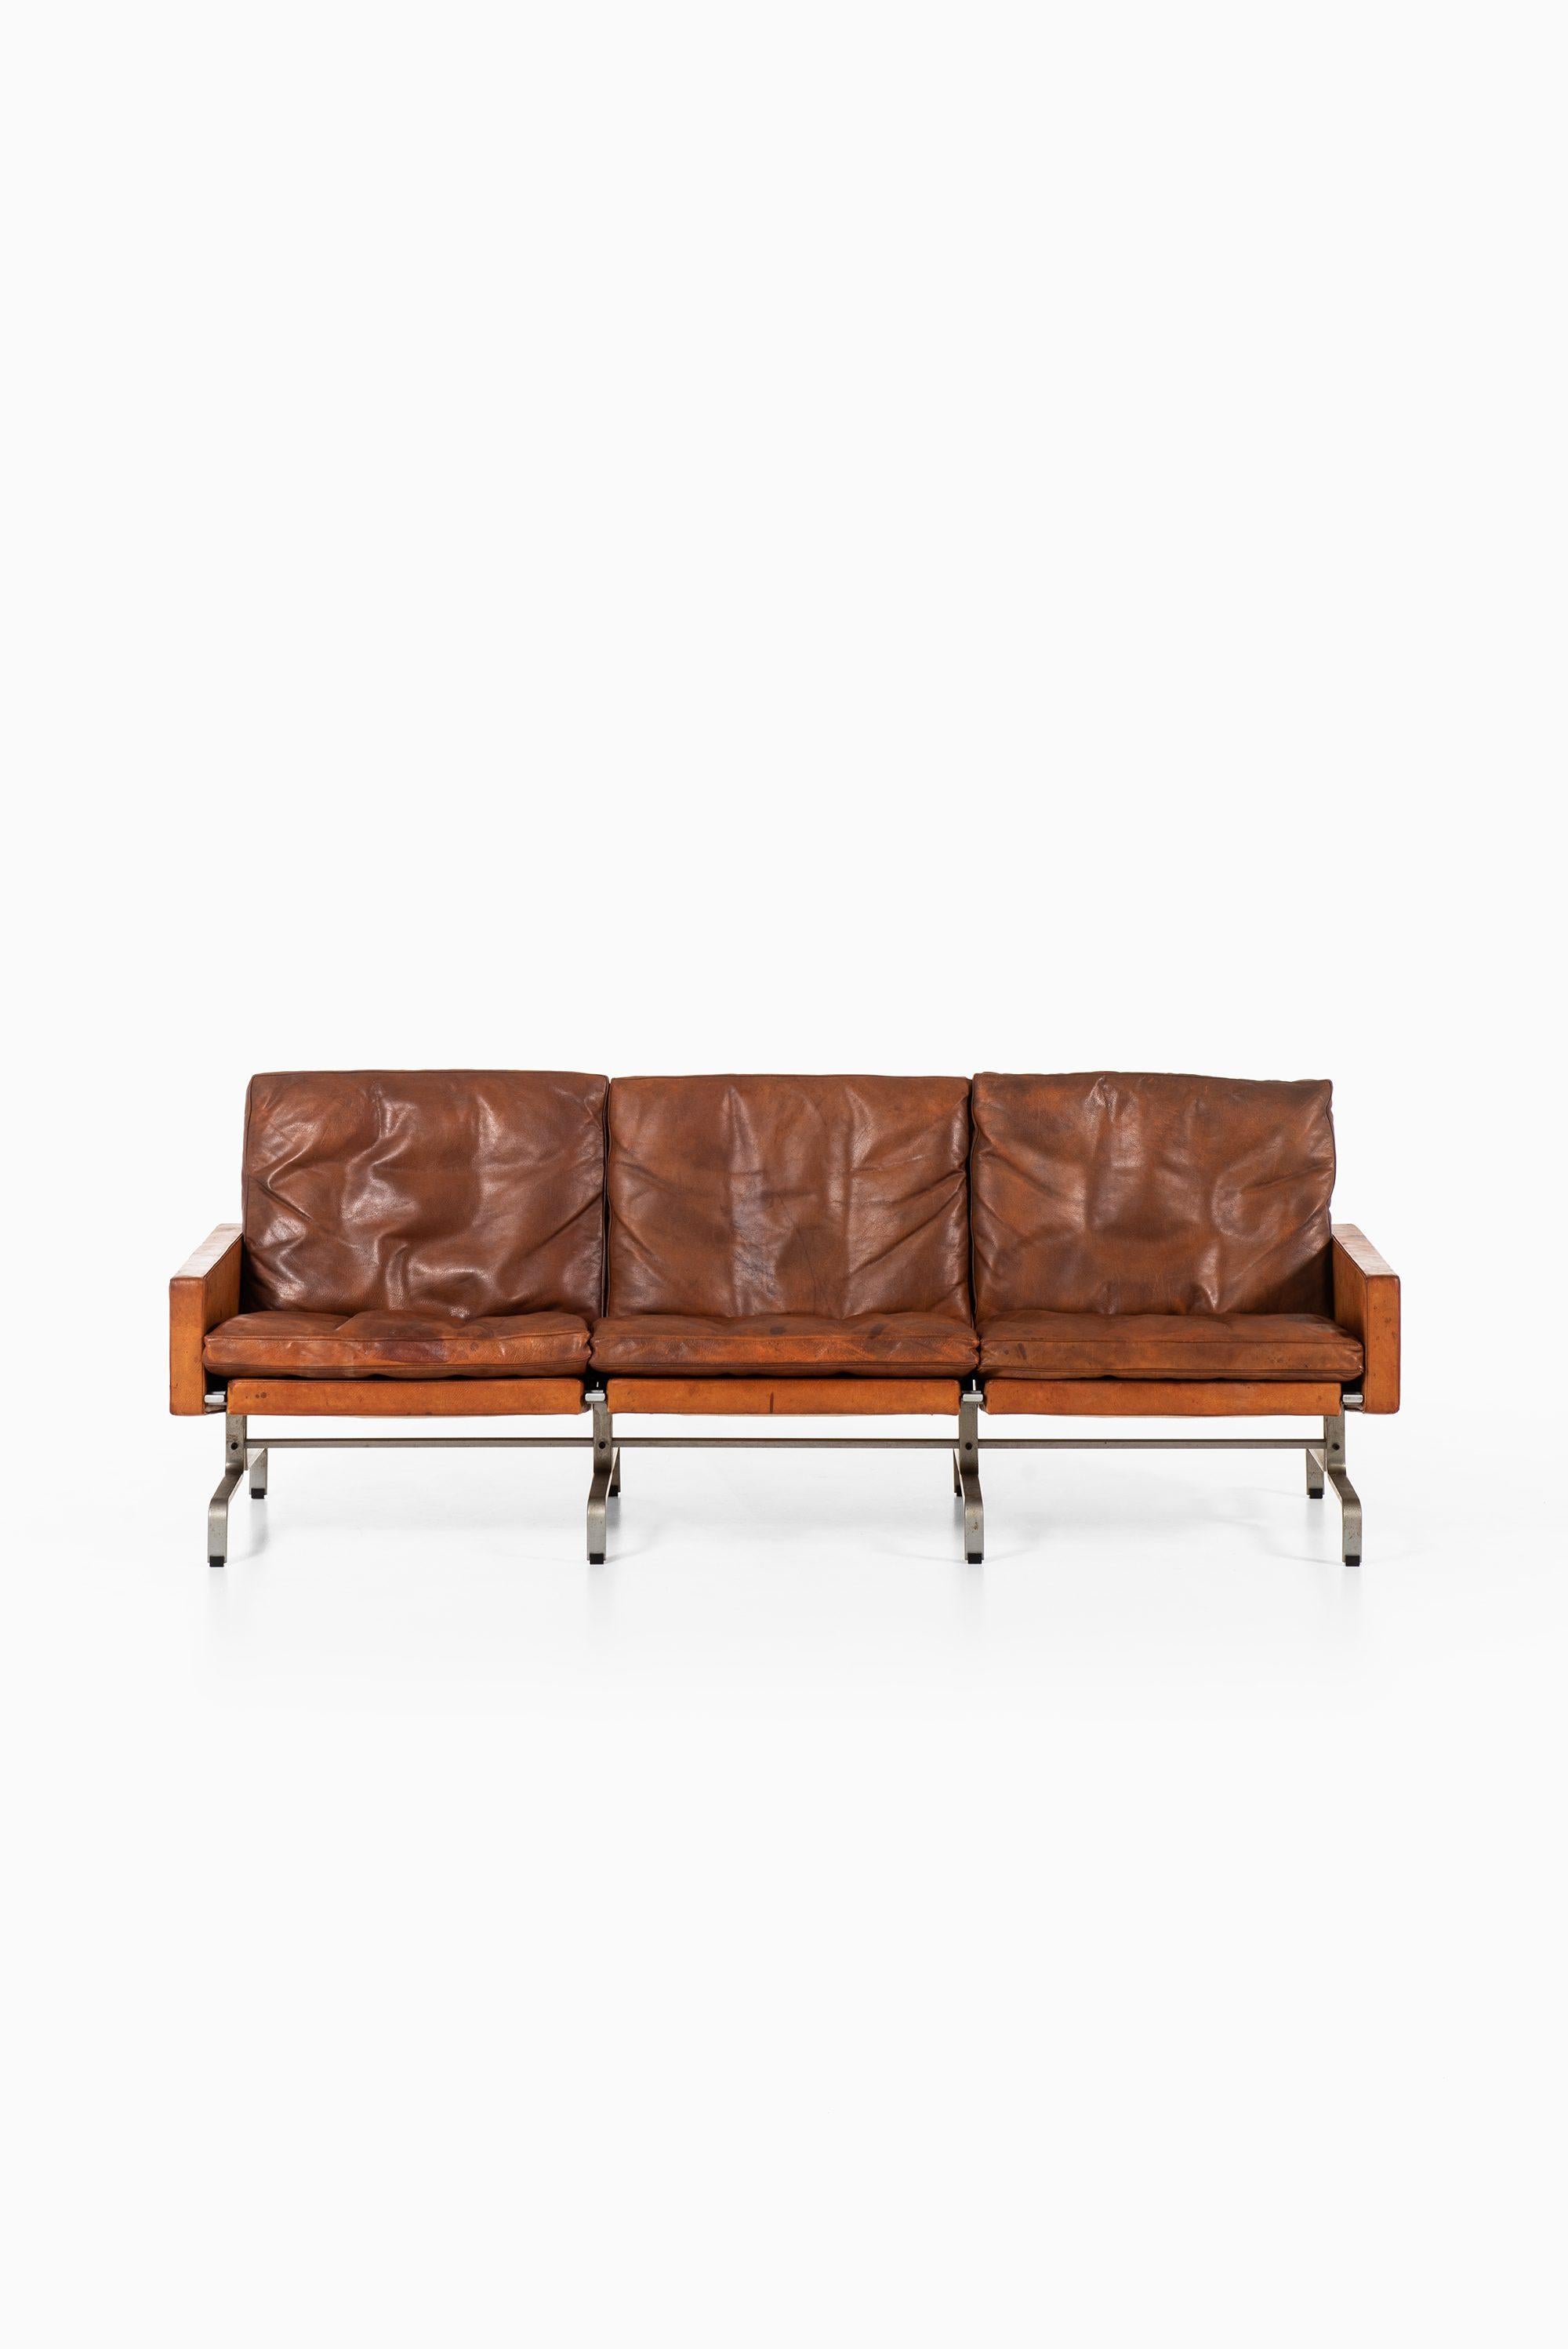 Rare sofa model PK-31/3 designed by Poul Kjærholm. Produced by E. Kold Christensen in Denmark.